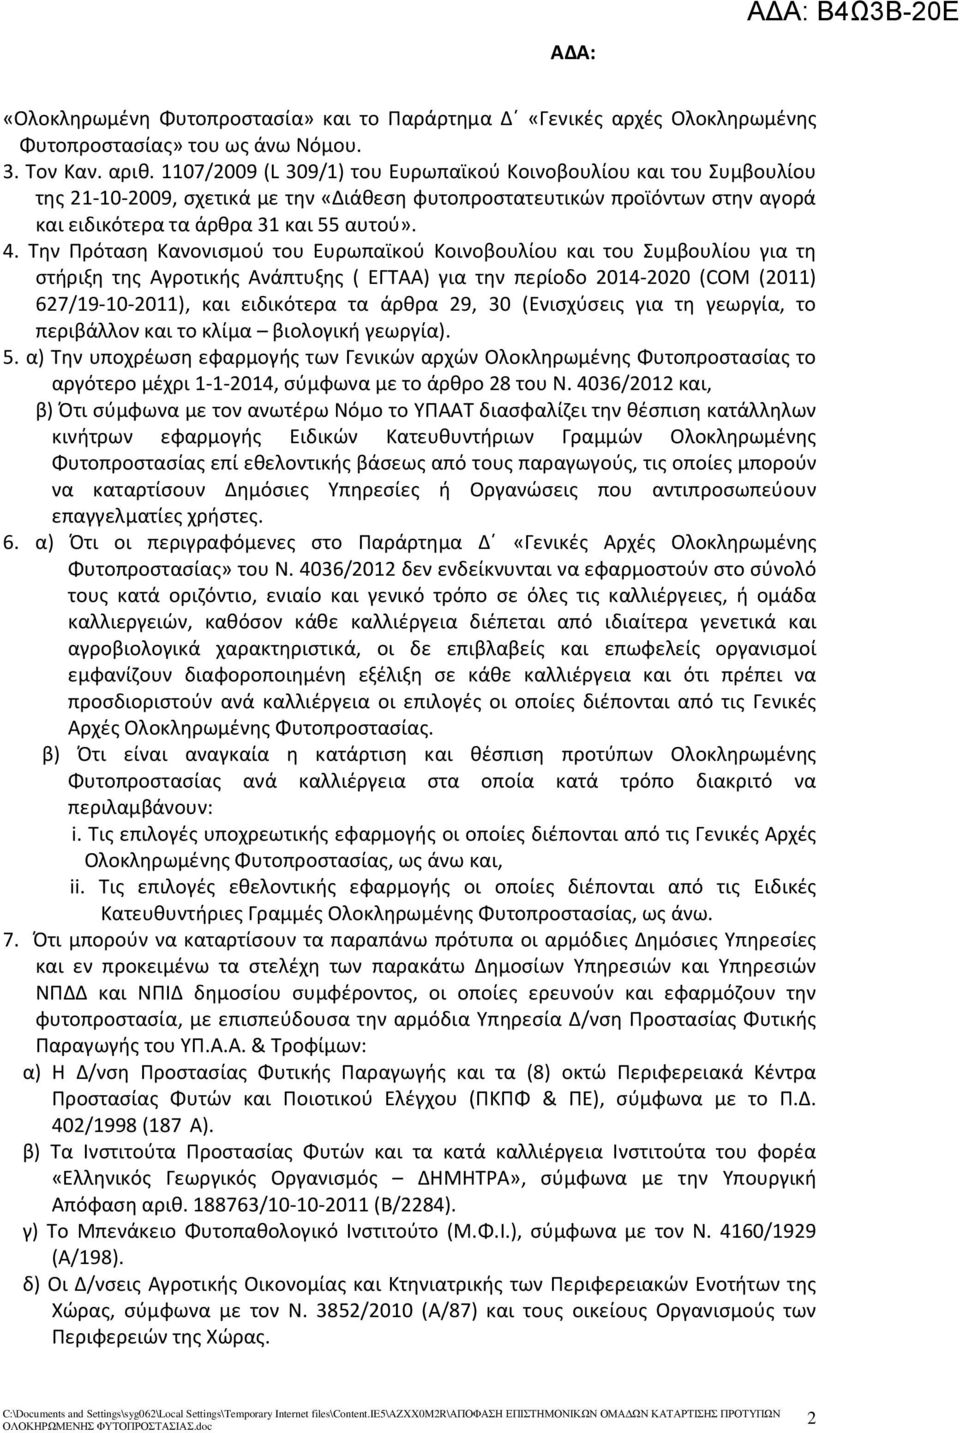 Την Πρόταση Κανονισμού του Ευρωπαϊκού Κοινοβουλίου και του Συμβουλίου για τη στήριξη της Αγροτικής Ανάπτυξης ( ΕΓΤΑΑ) για την περίοδο 2014-2020 (COM (2011) 627/19-10-2011), και ειδικότερα τα άρθρα